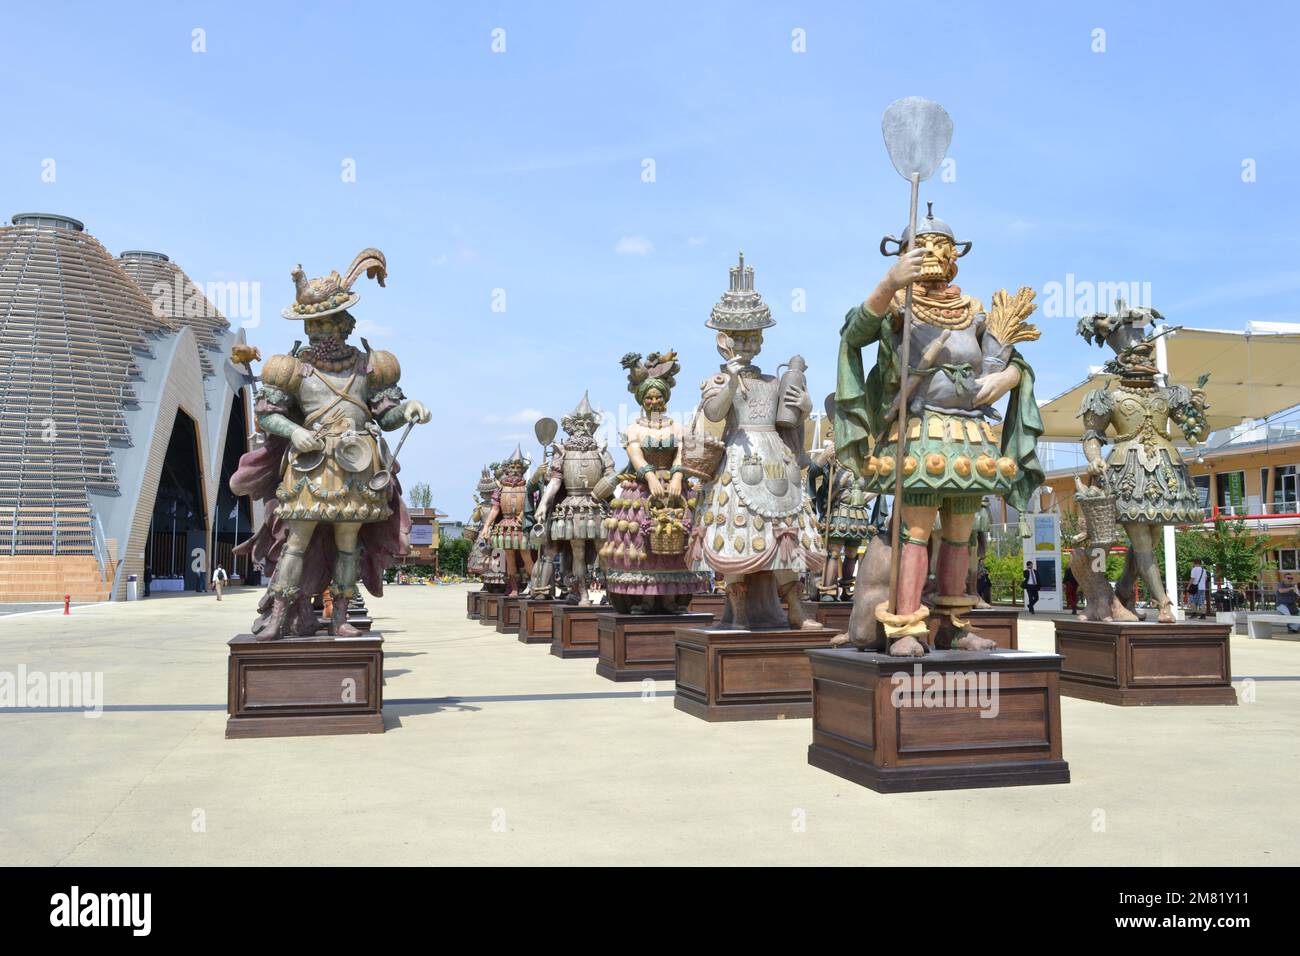 Statues des gens de l'alimentation par Dante Ferretti placé à l'entrée de l'Expo Milano 2015. Allégorie universelle des emplois créés pour nourrir les gens. Banque D'Images